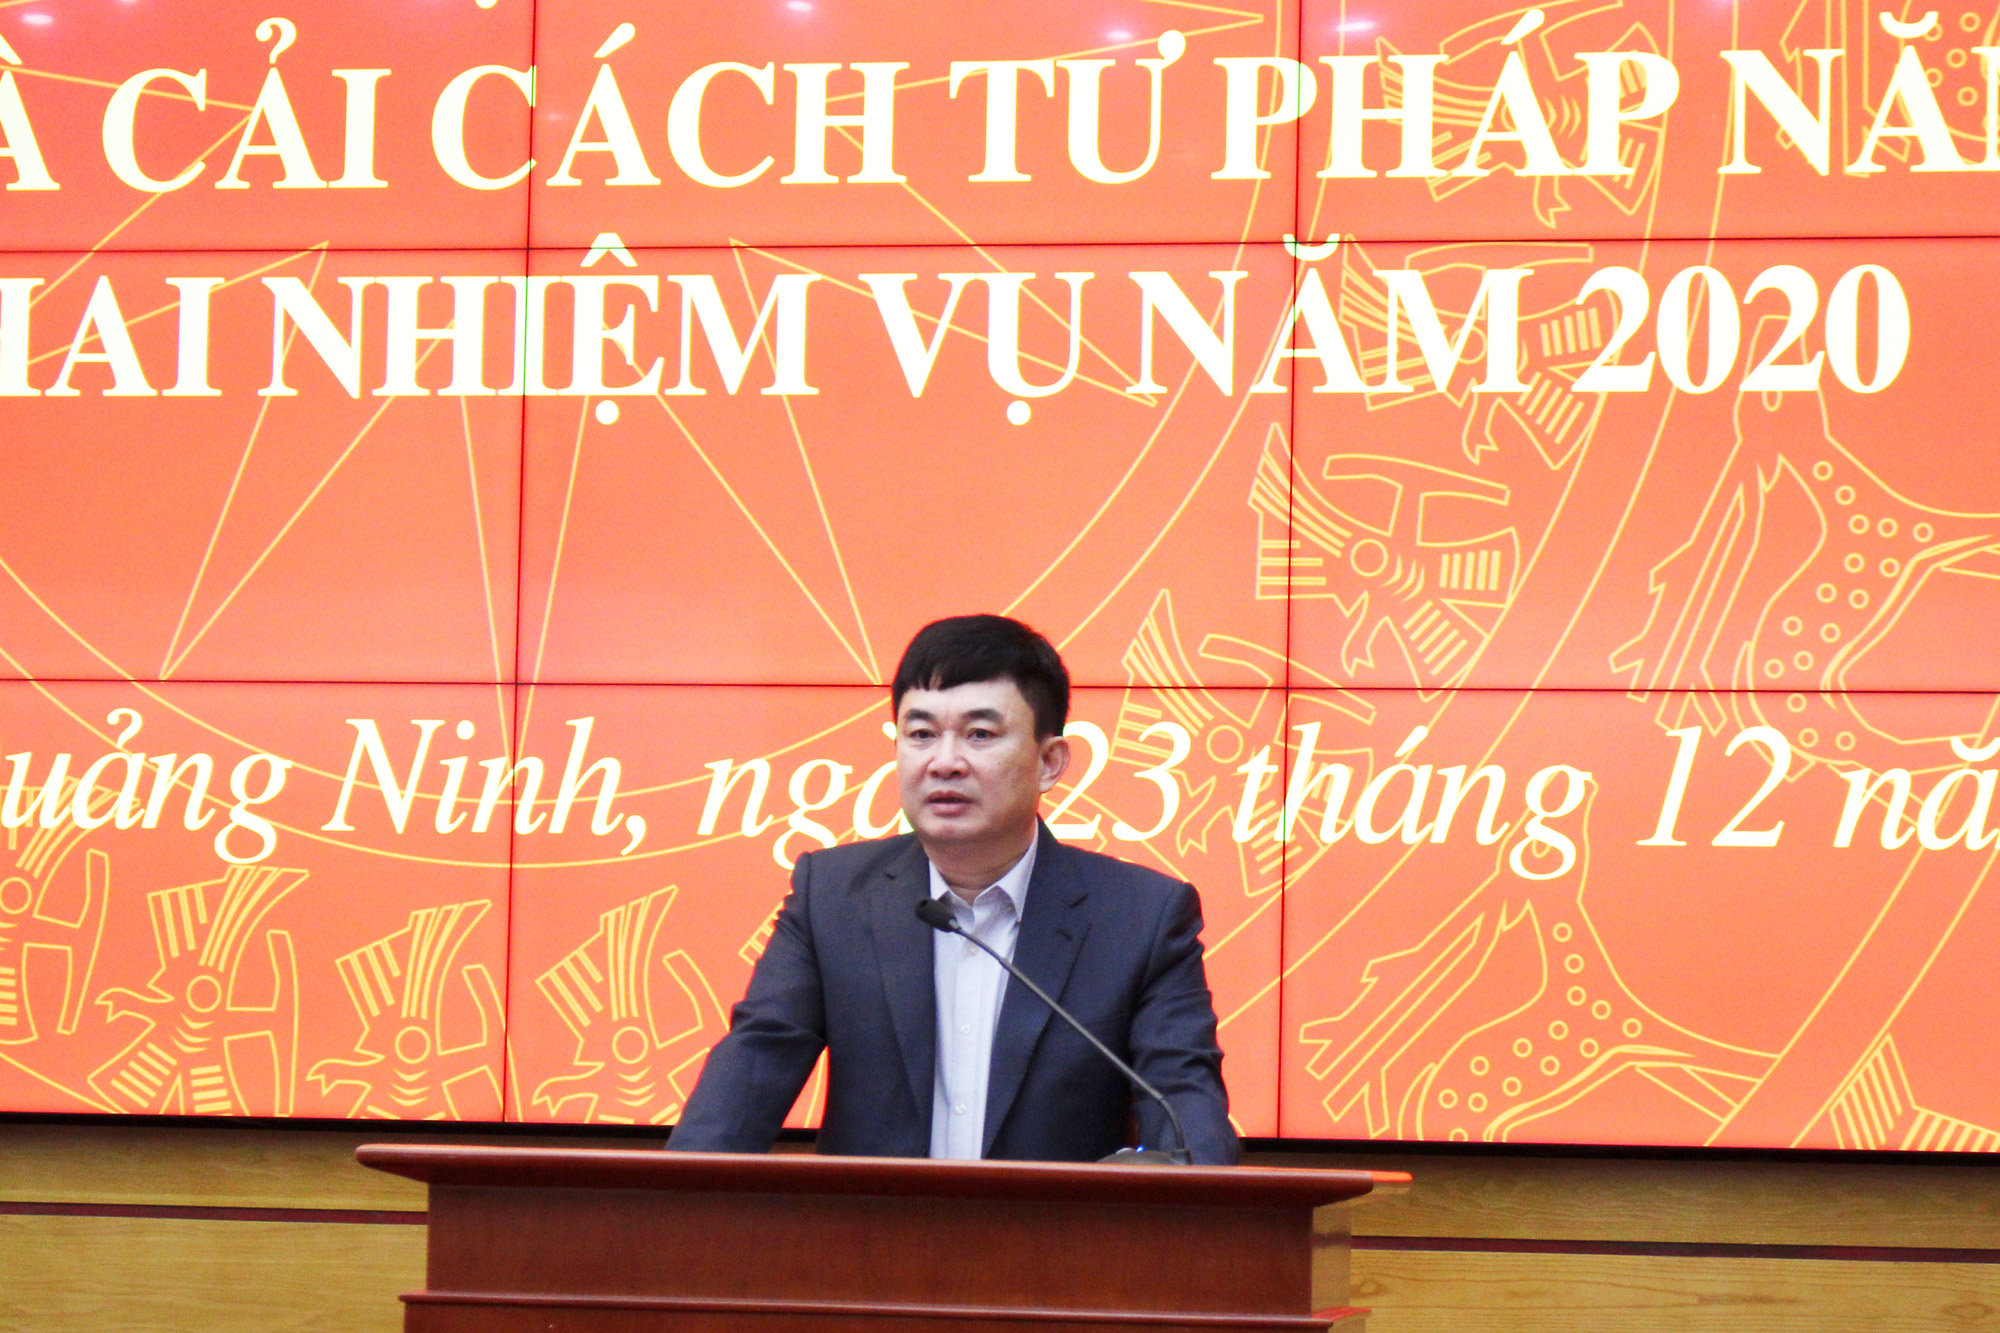 Đồng chí Ngô Hoàng Ngân, Phó Bí thư Thường trực  Tỉnh ủy, phát biểu chỉ đạo tại hội nghị.